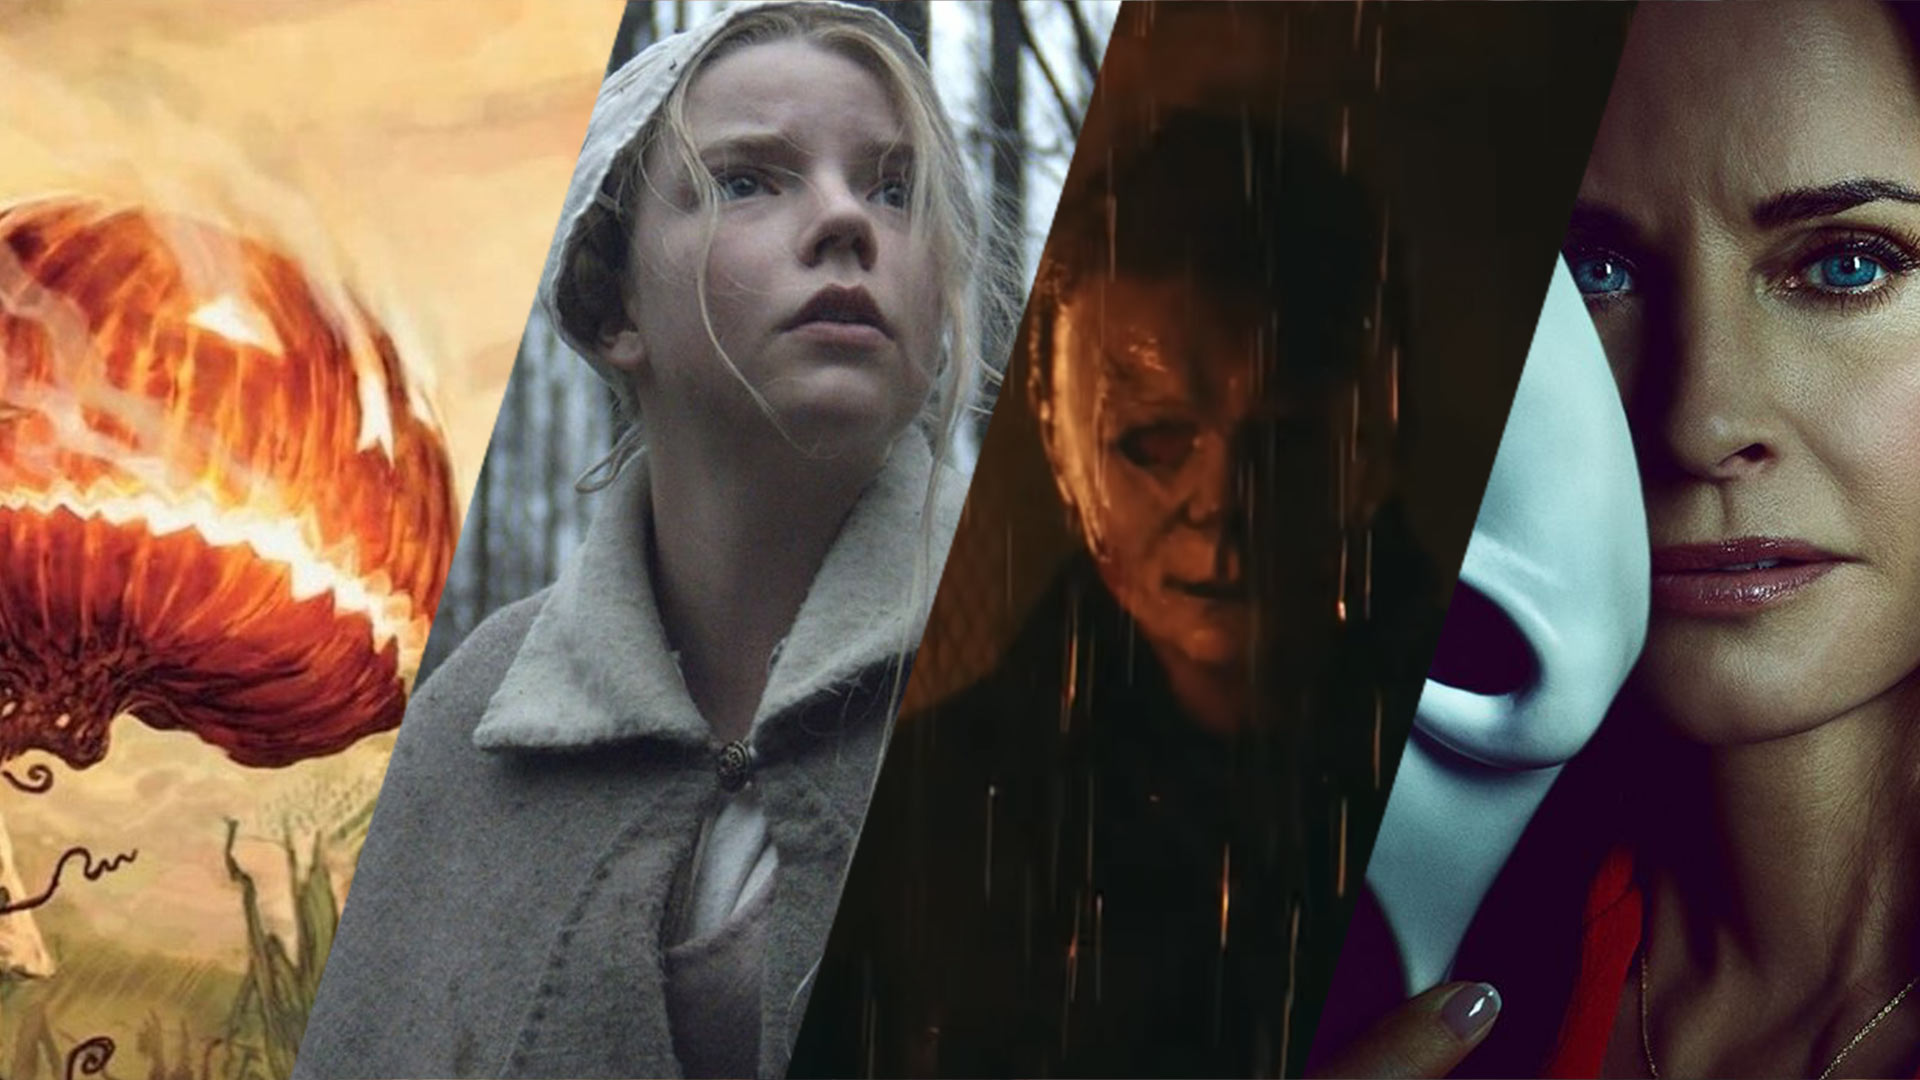 بهترین فیلم های ترسناک ۲۰۲۲ که منتظرشان هستیم | ۱۵ فیلم به ترتیب تاریخ اکران